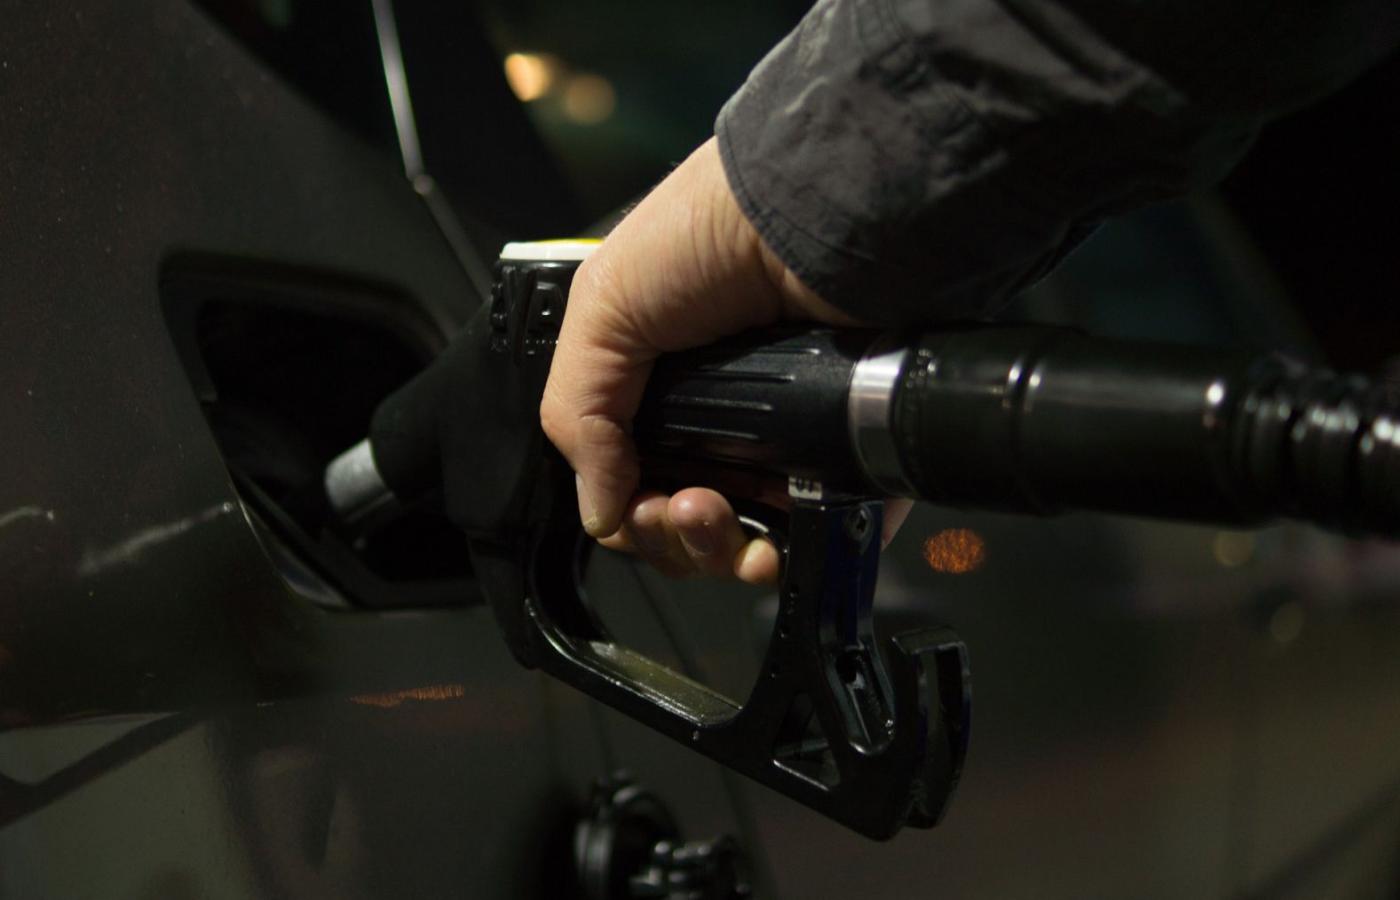 Opłata emisyjna – 10 groszy od każdego litra sprzedanego paliwa – to kolejny podatek.